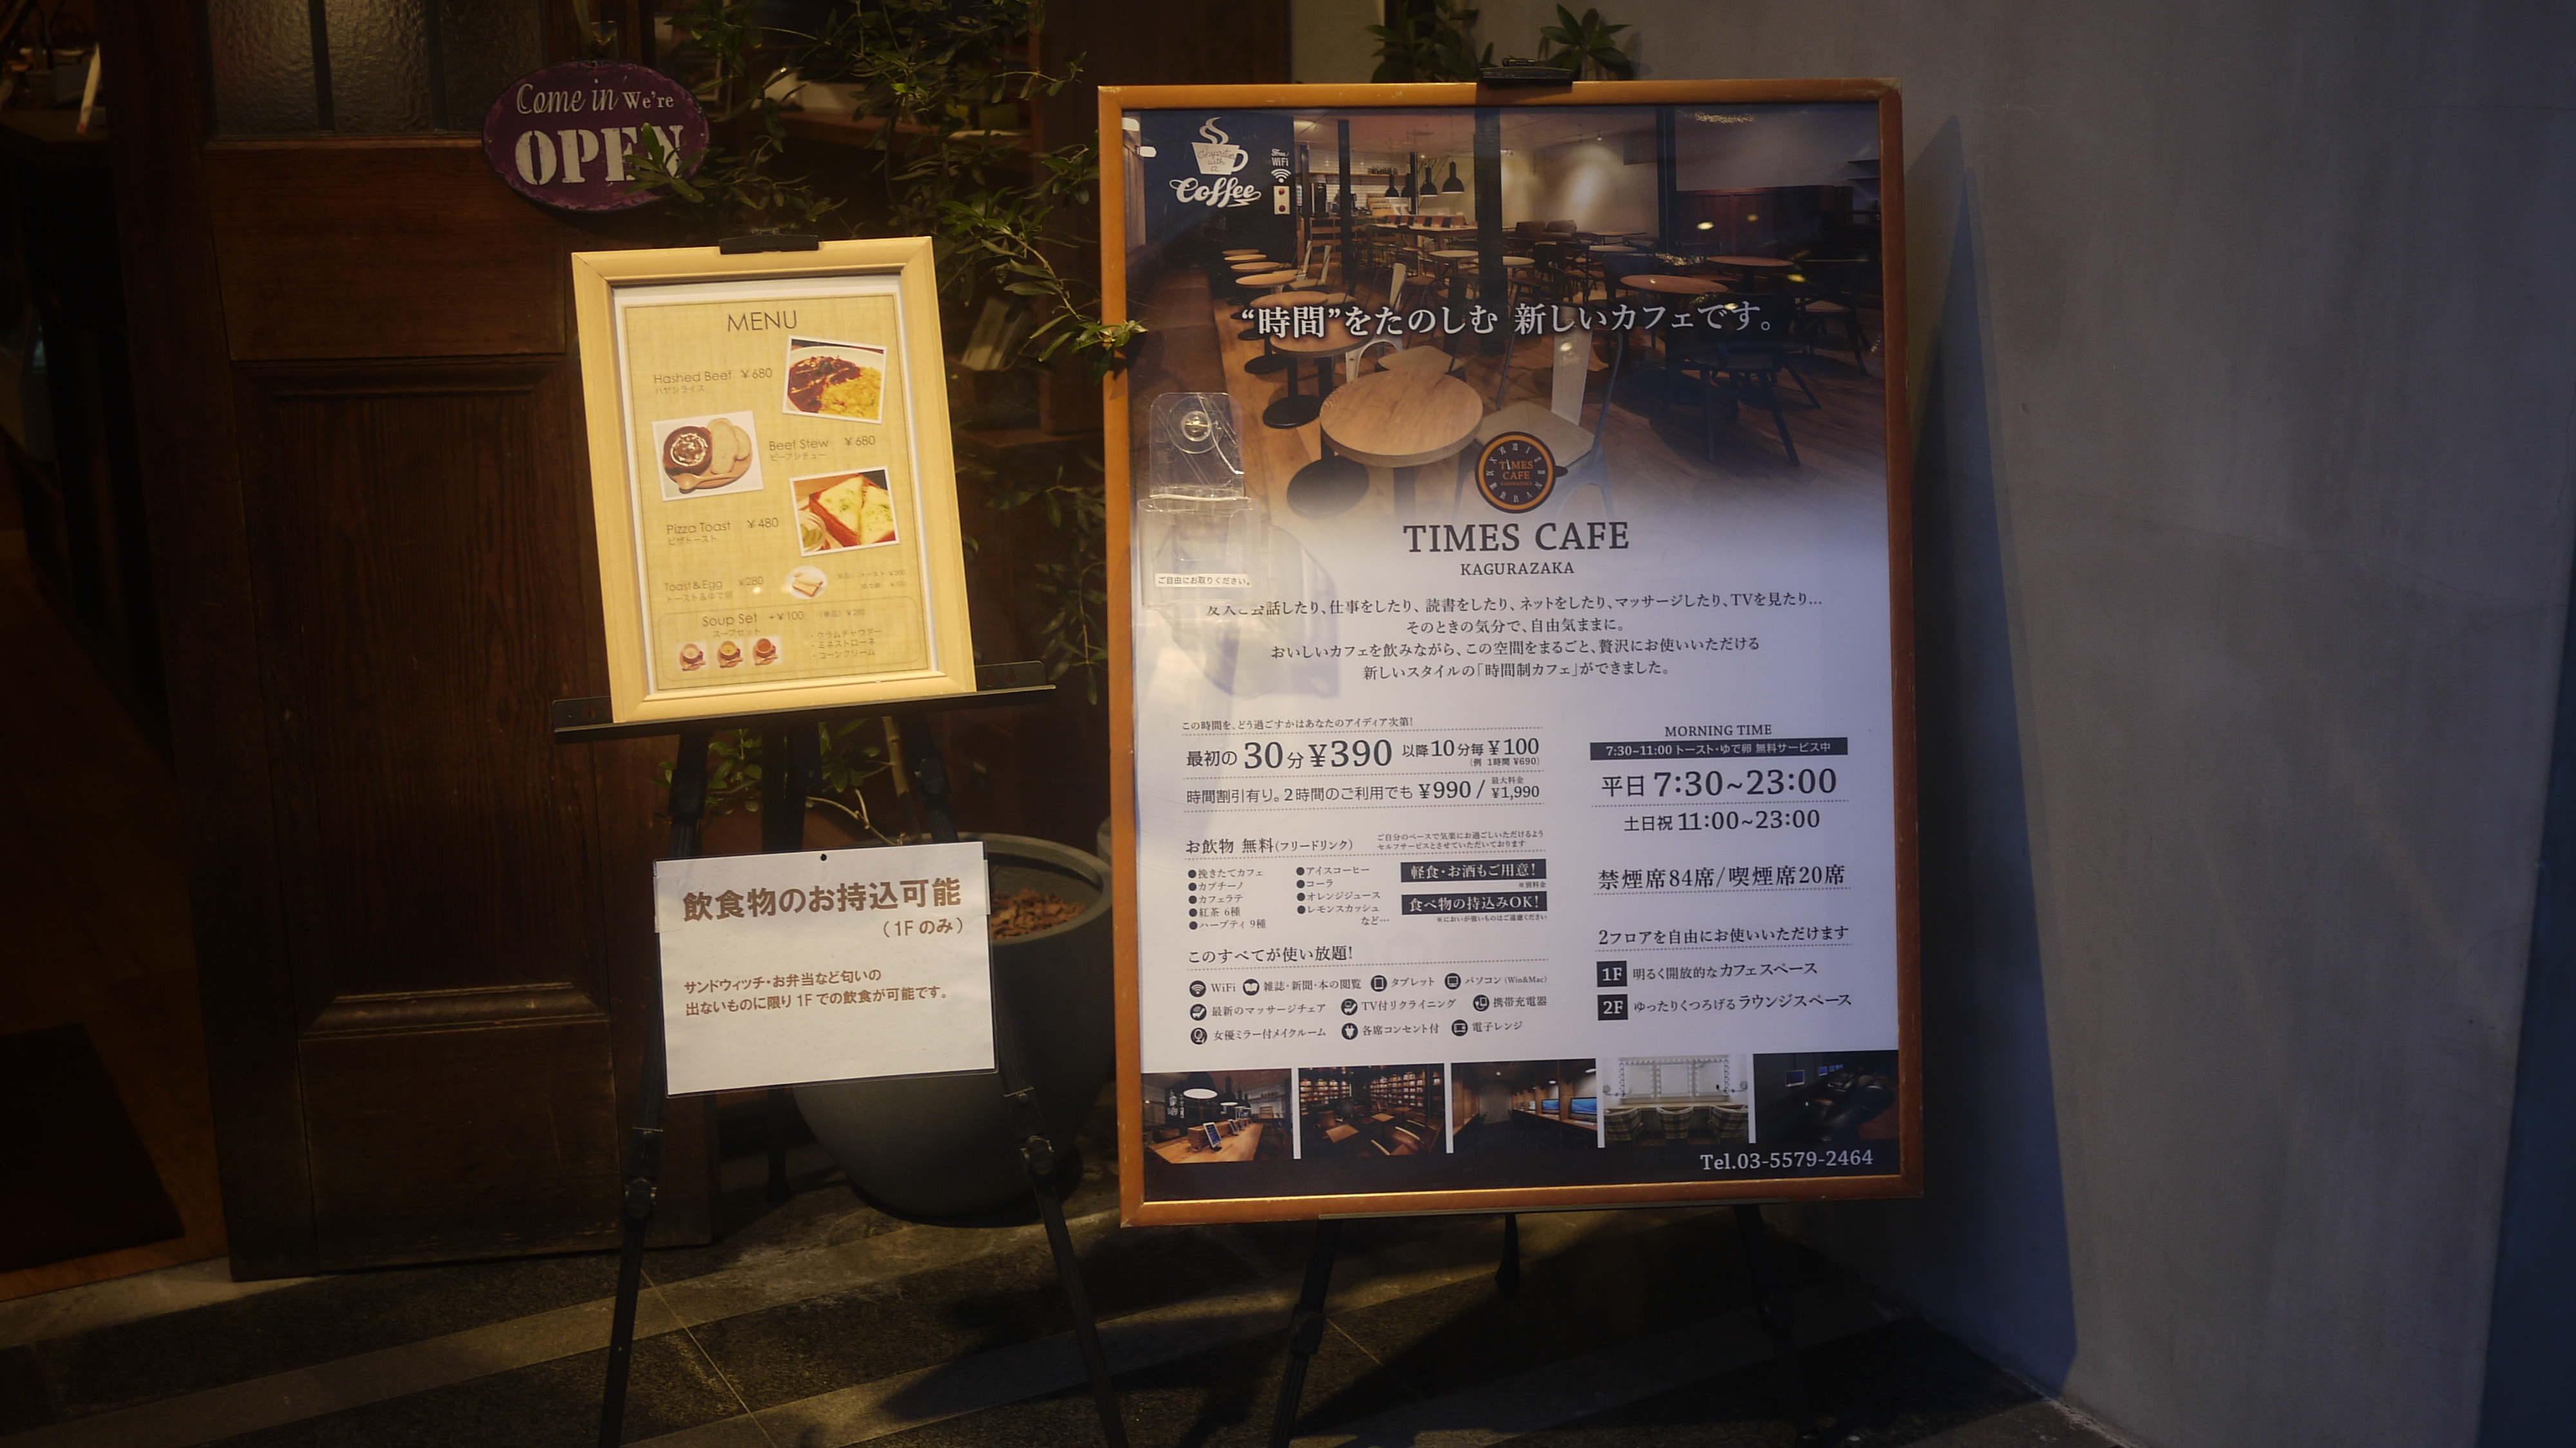 時間制カフェ「TIMES CAFE KAGURAZAKA」に行ってきた。カフェとコワーキングのいいとこどりをした快適な空間が魅力